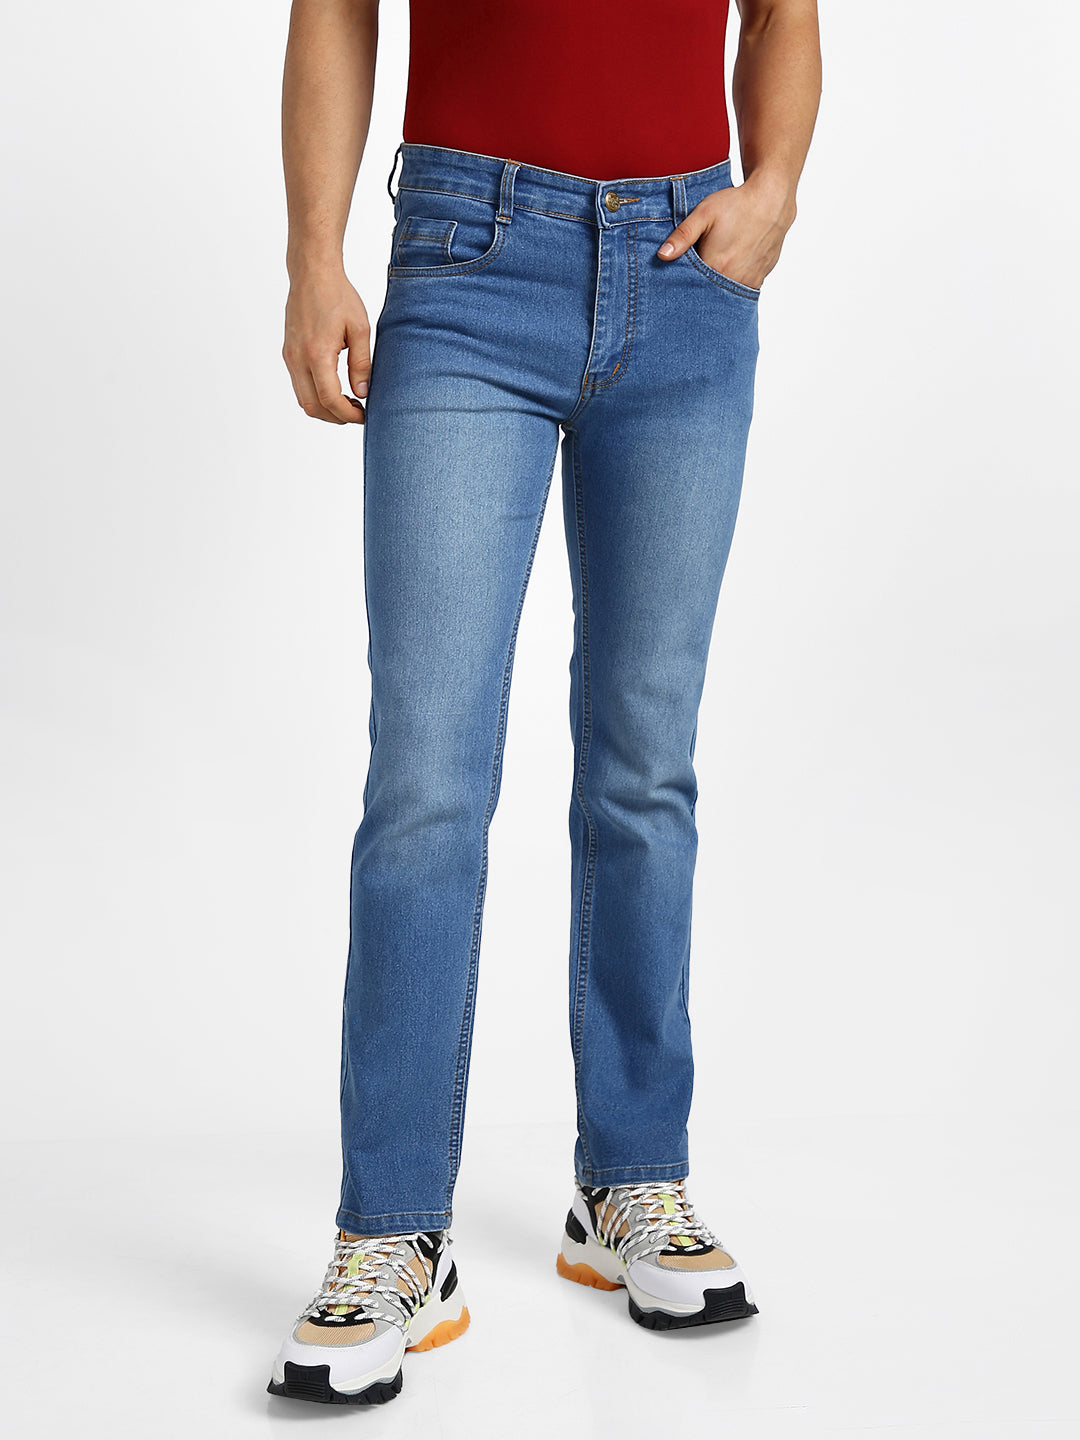 Men's Lightish Blue Regular Fit Washed Jeans Stretchable